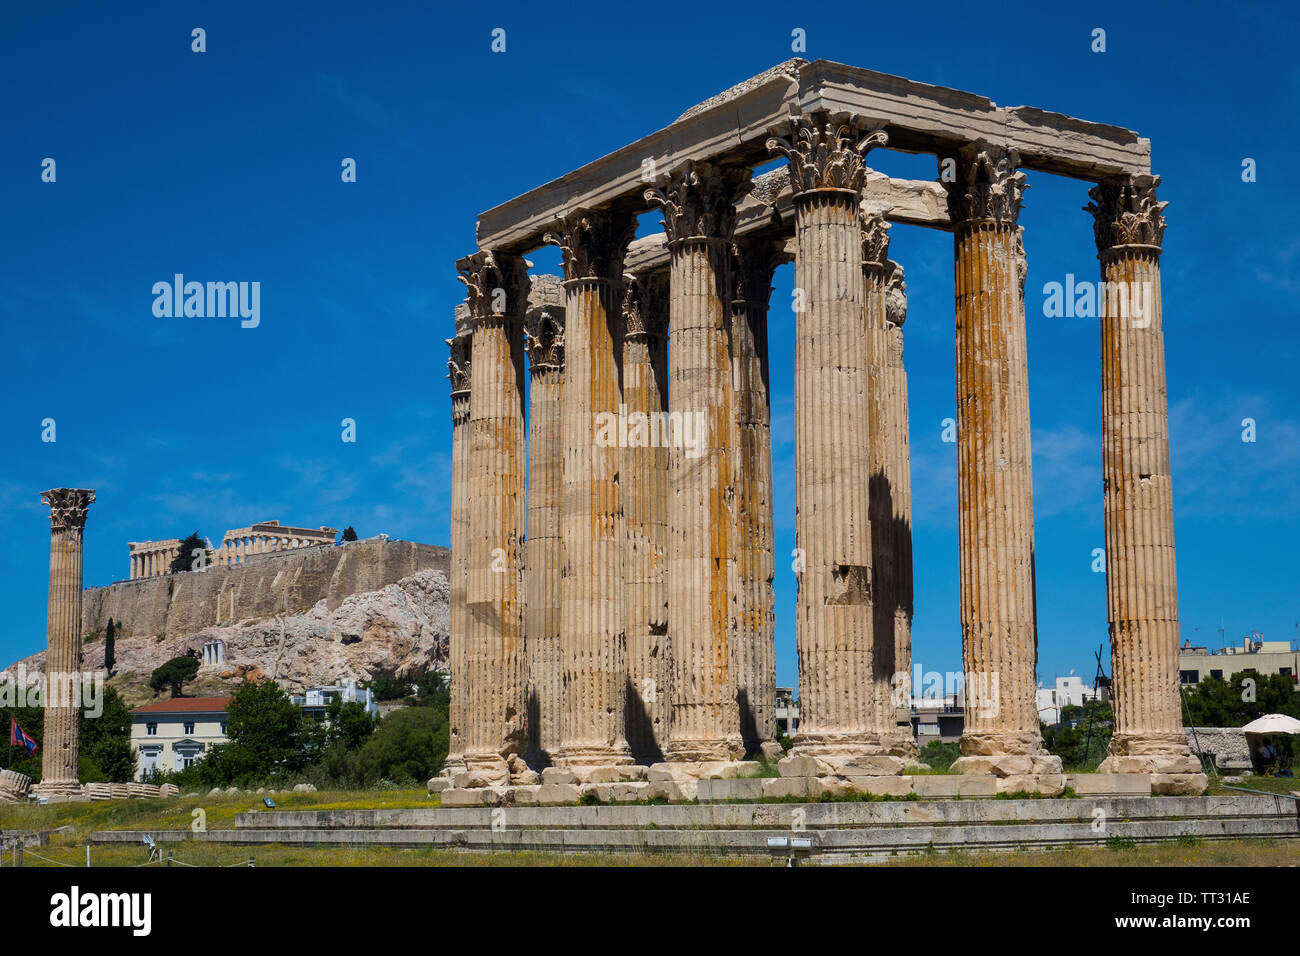 Greece, Athens, Temple of Zeus & Acropolis Stock Photo